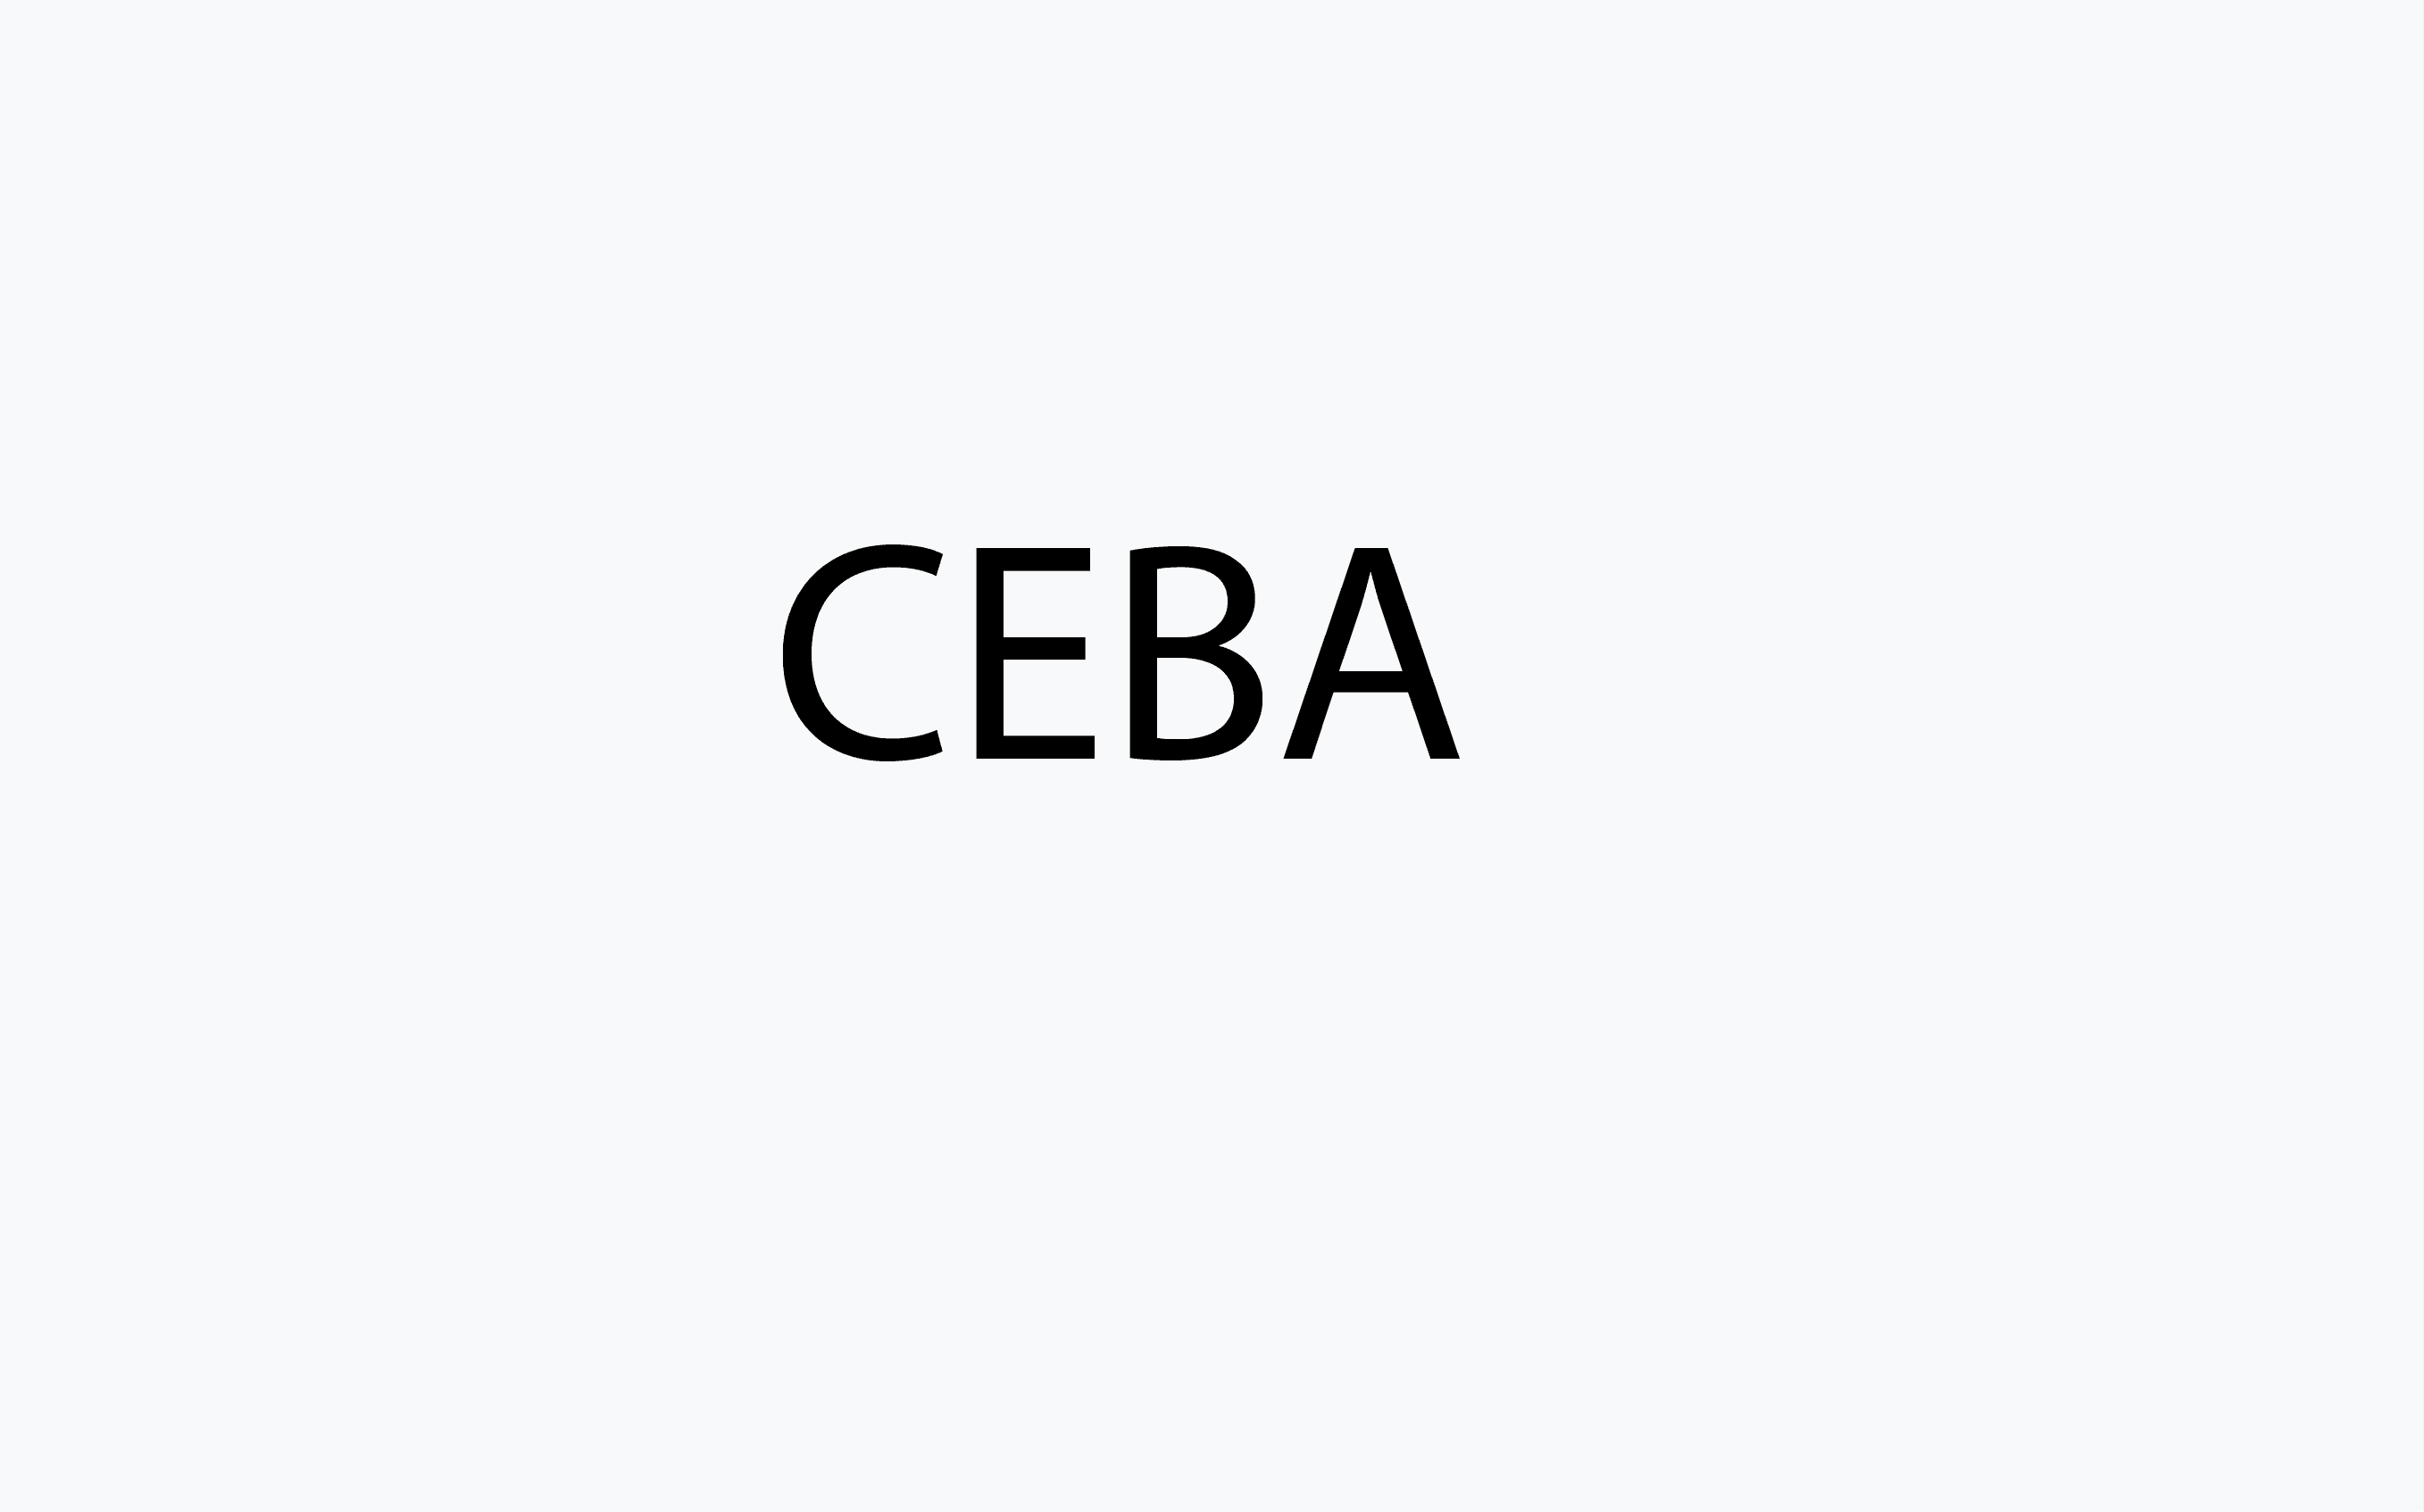 Ceba category